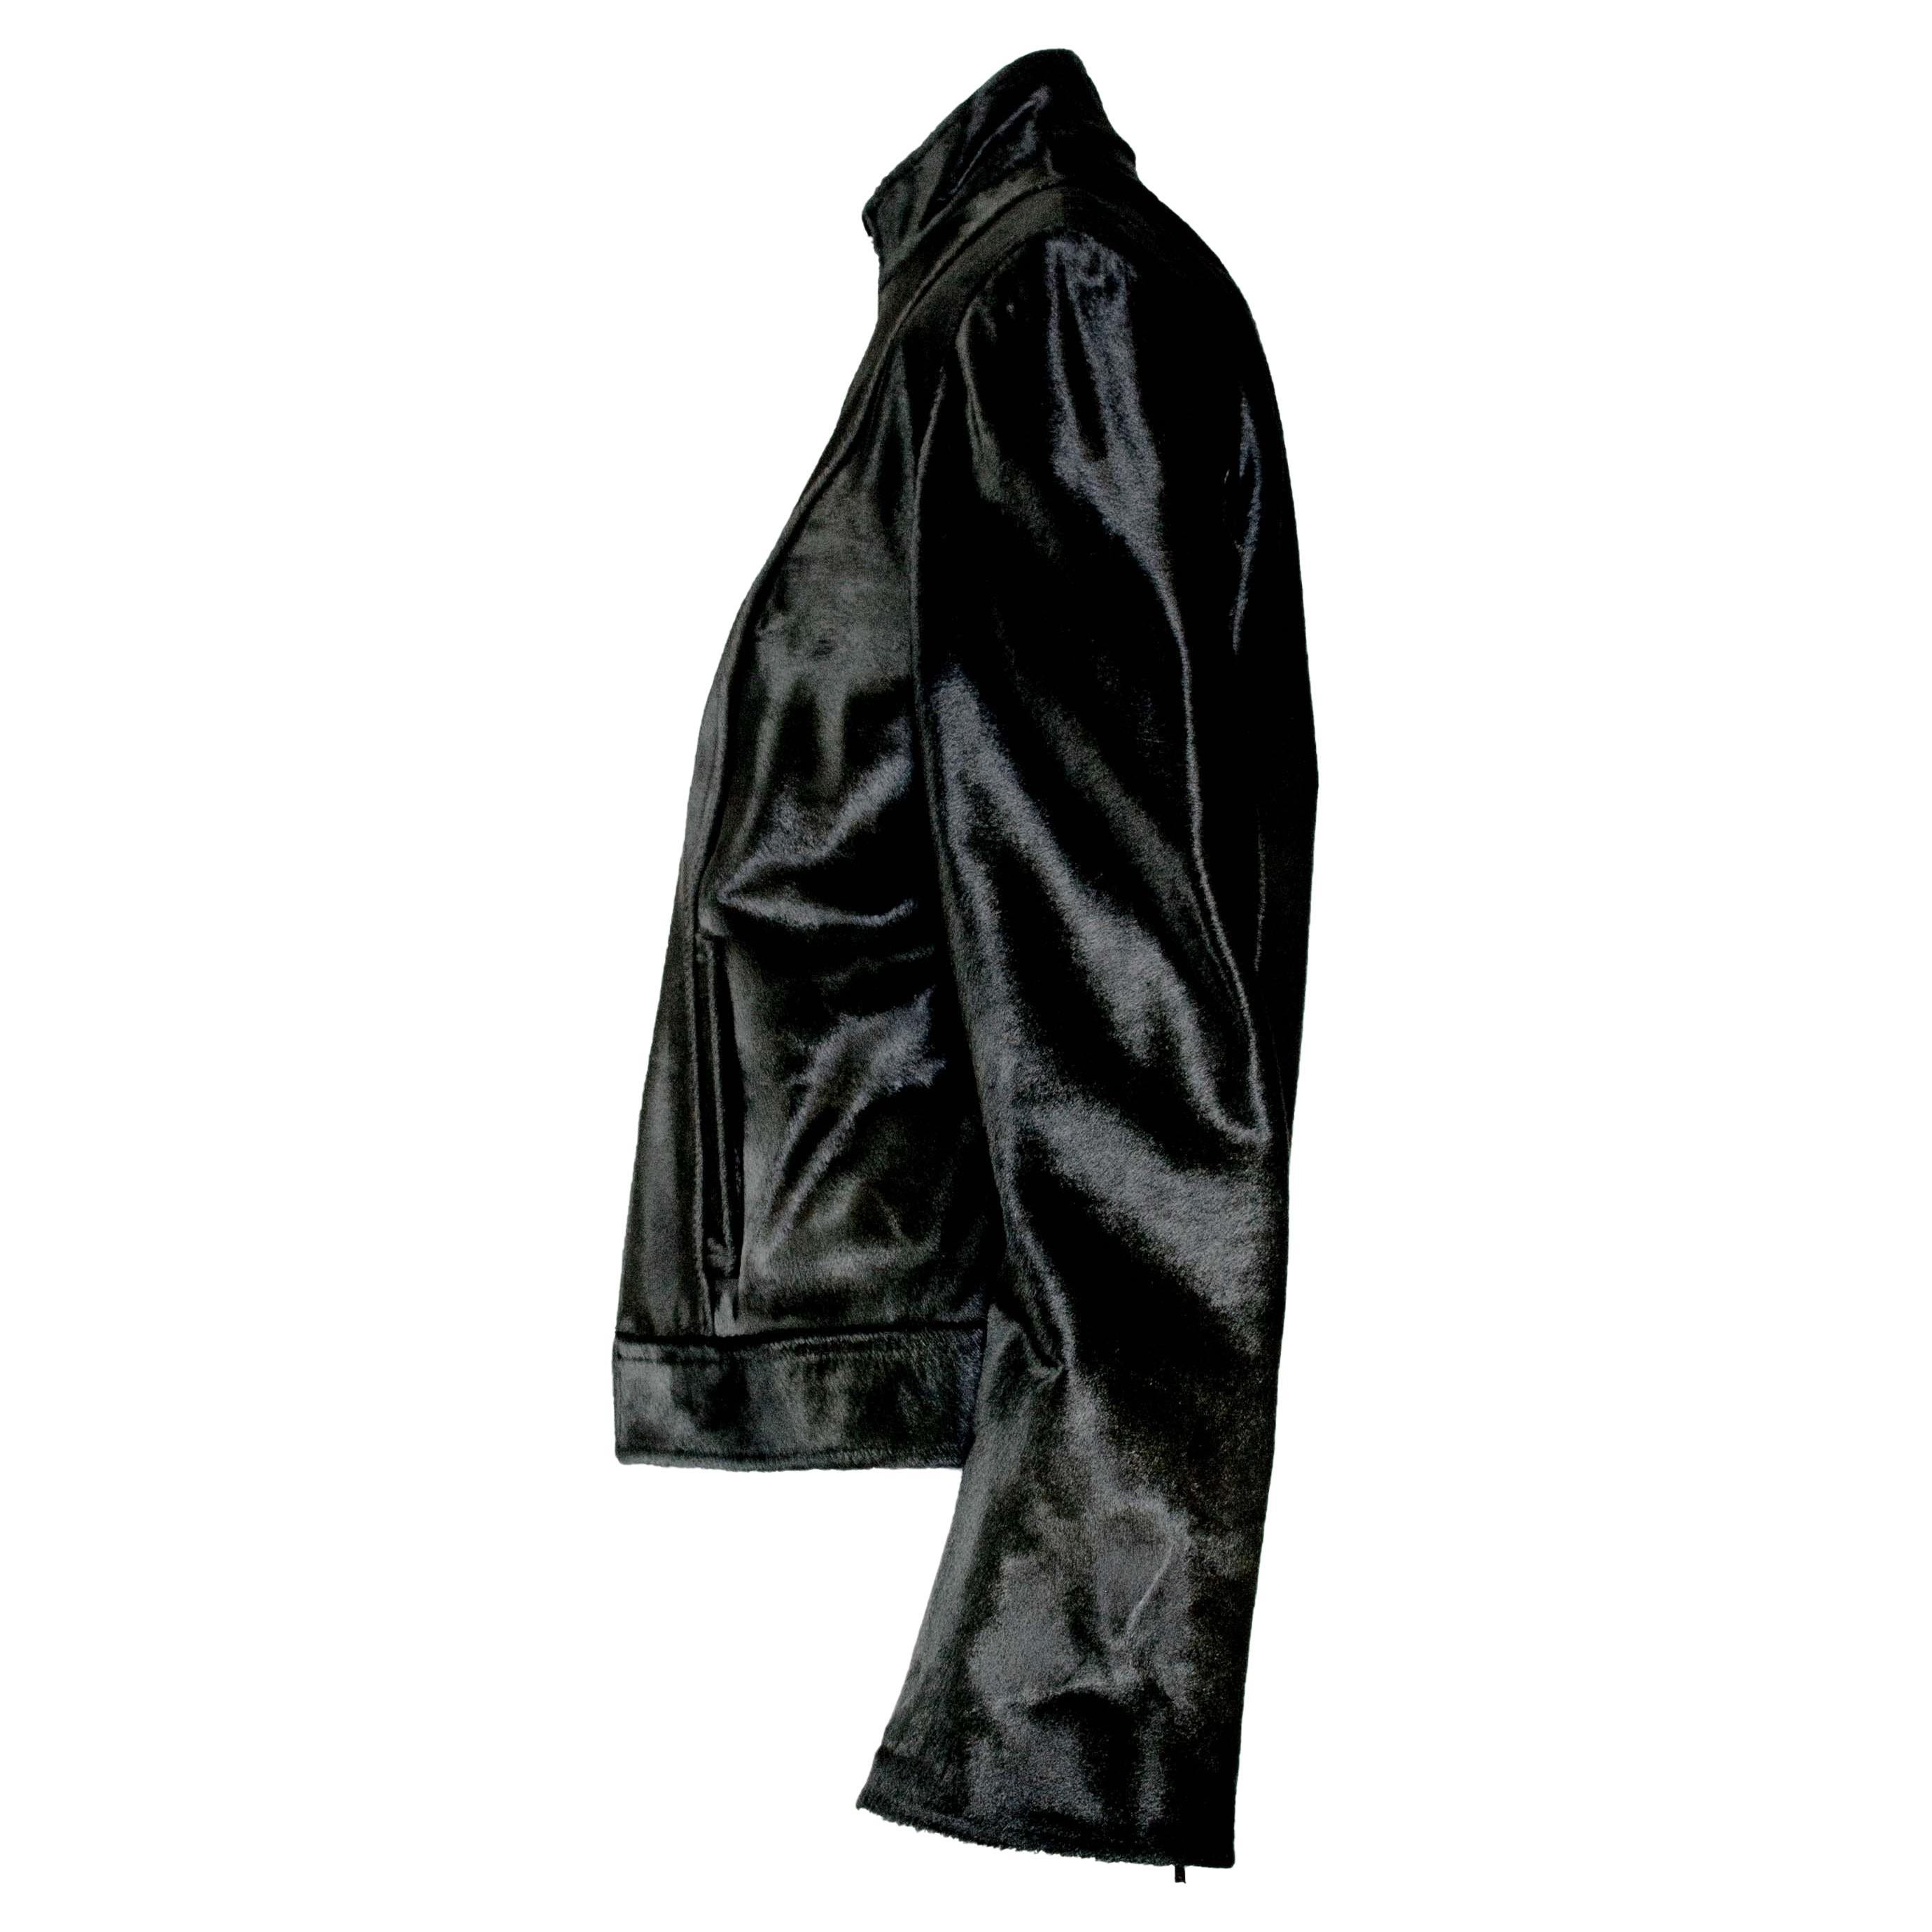 Er präsentiert eine Gucci by Tom Ford Ponyhaarjacke in dunklem Olivgrün für die Saison 1997. Diese Jacke ist mit luxuriösem, glänzendem, tiefgrünem Ponyhaar überzogen und innen mit weichem Leder besetzt. Diese 